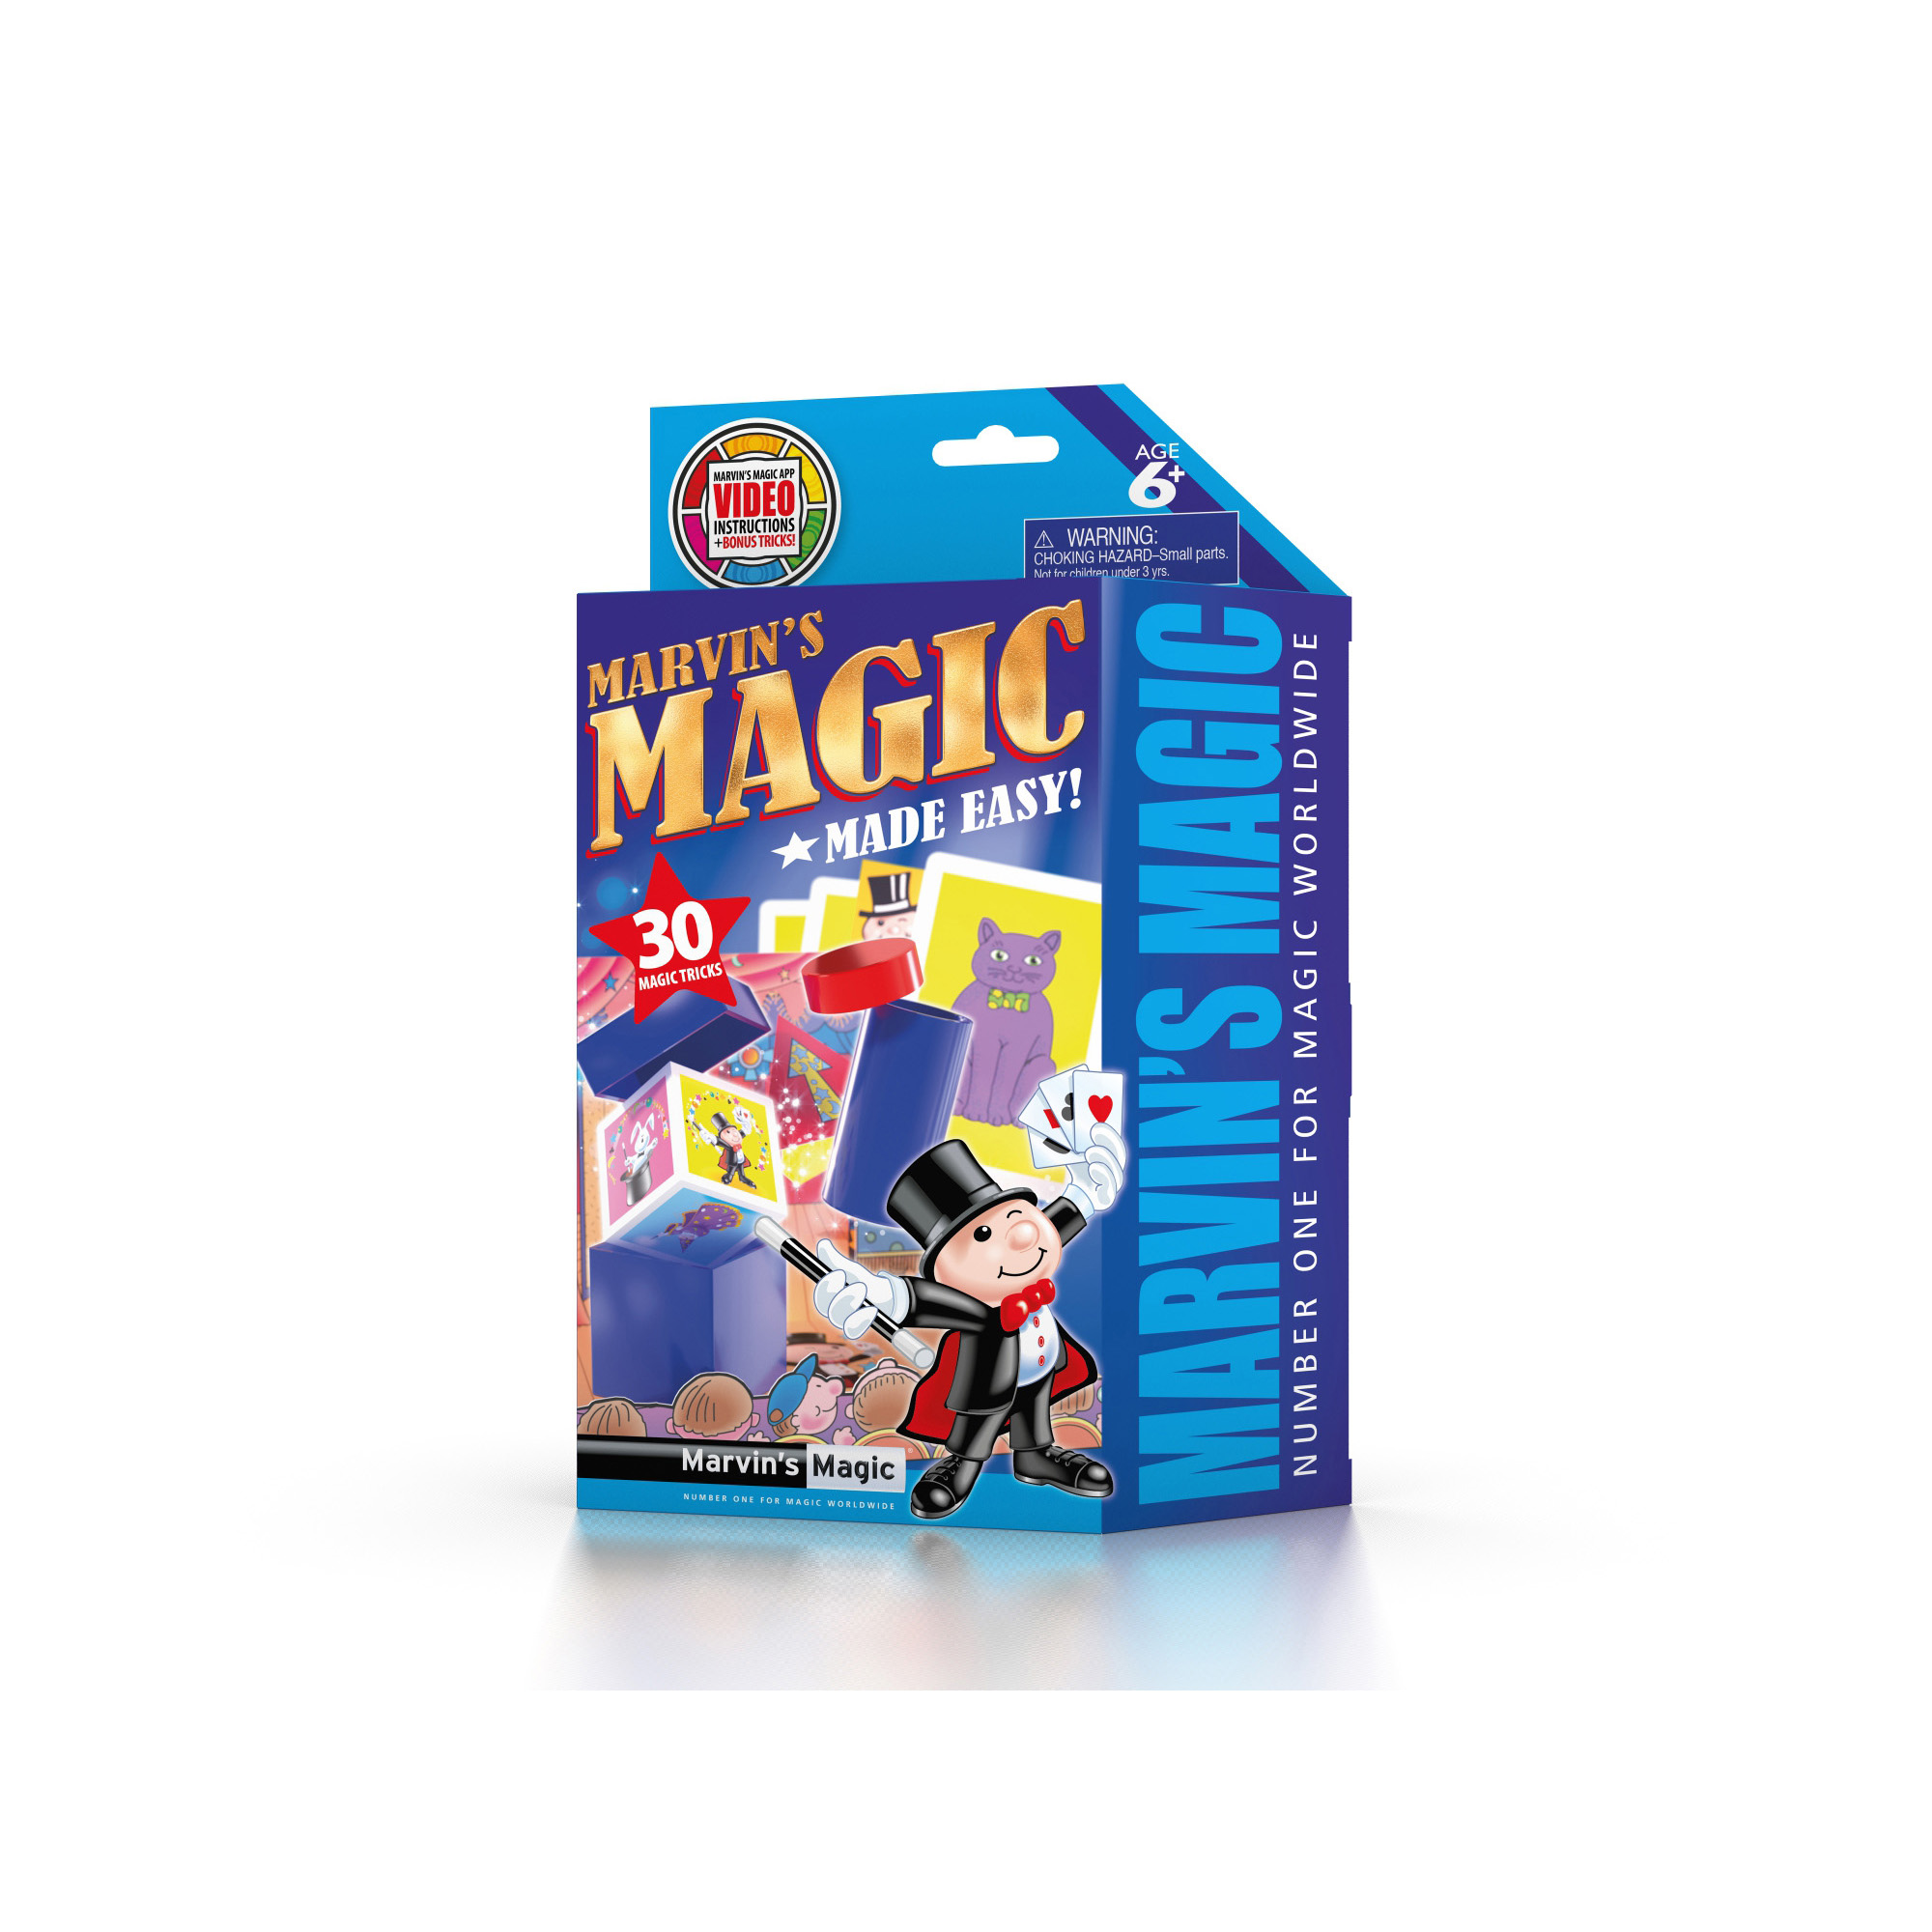 Marvin's amazing magic 30 tricks 1 - Marvin's Magic